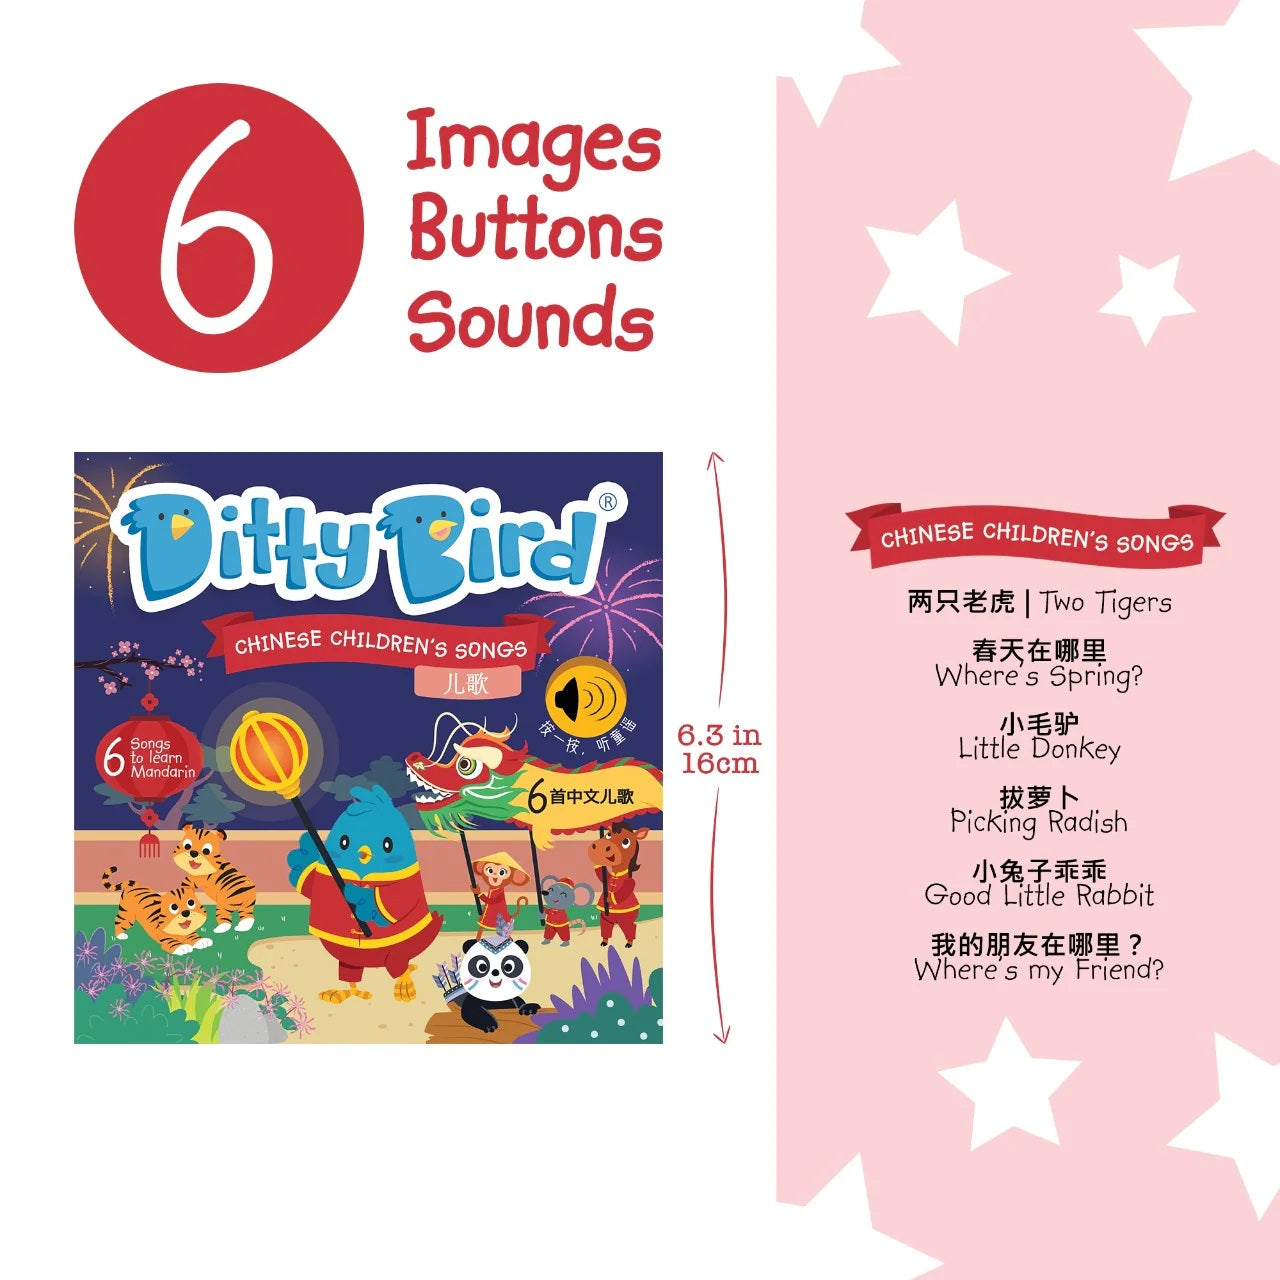 Ditty Bird Chinese Children's Songs Vol. 1 in Mandarin